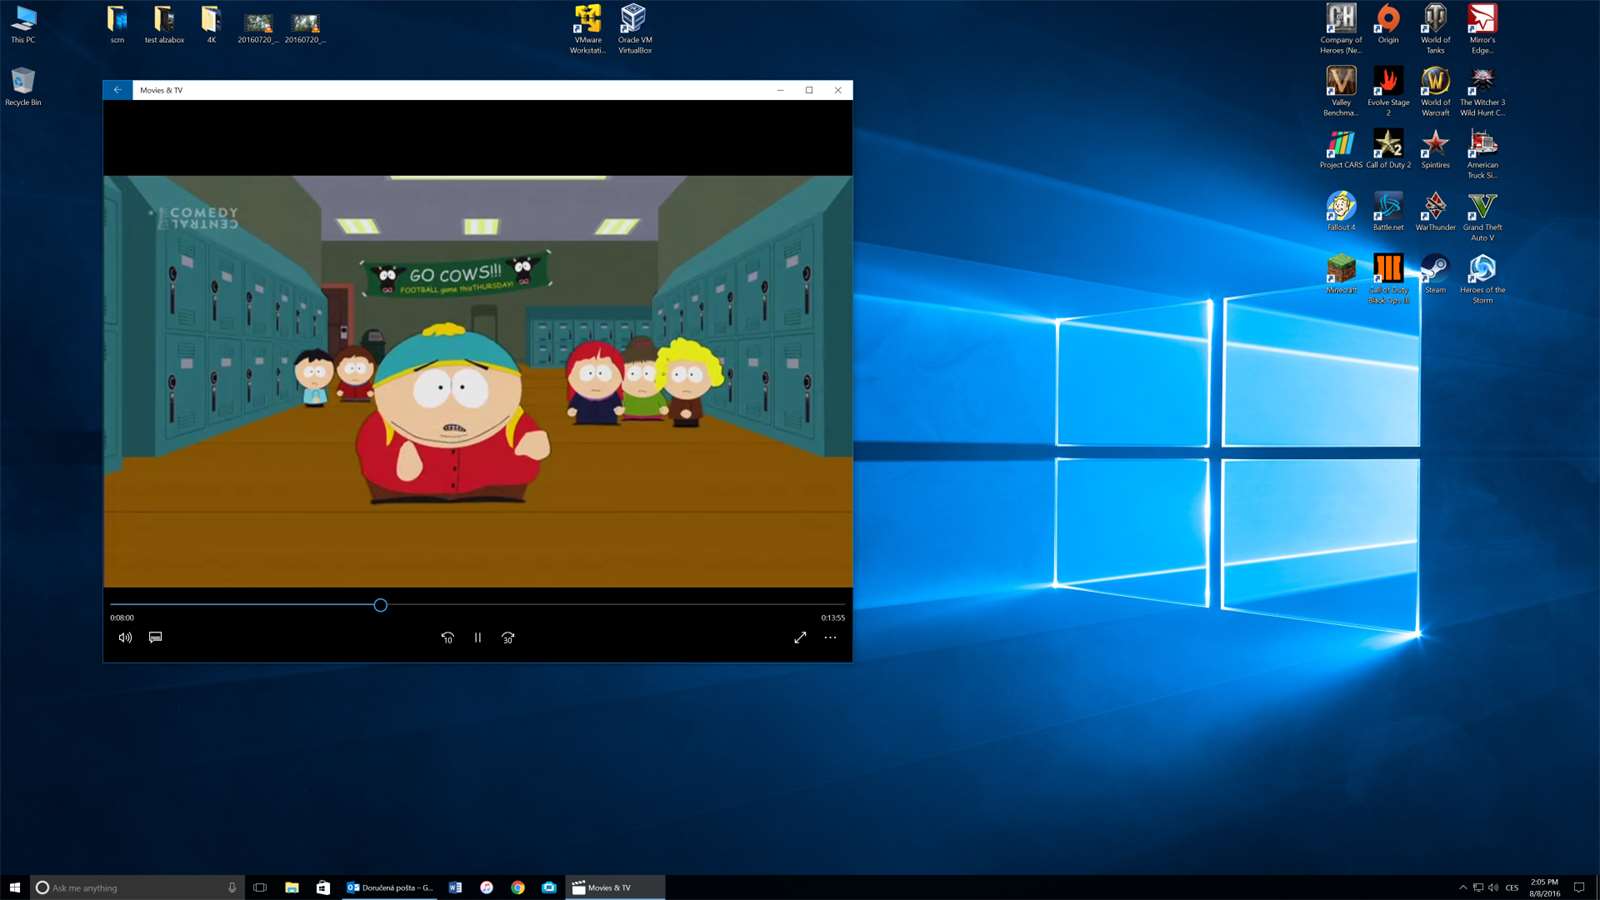 Galerie - Microsoft chystá dietní Windows 10. Pojedou i na těch největších herkách – Živě.cz